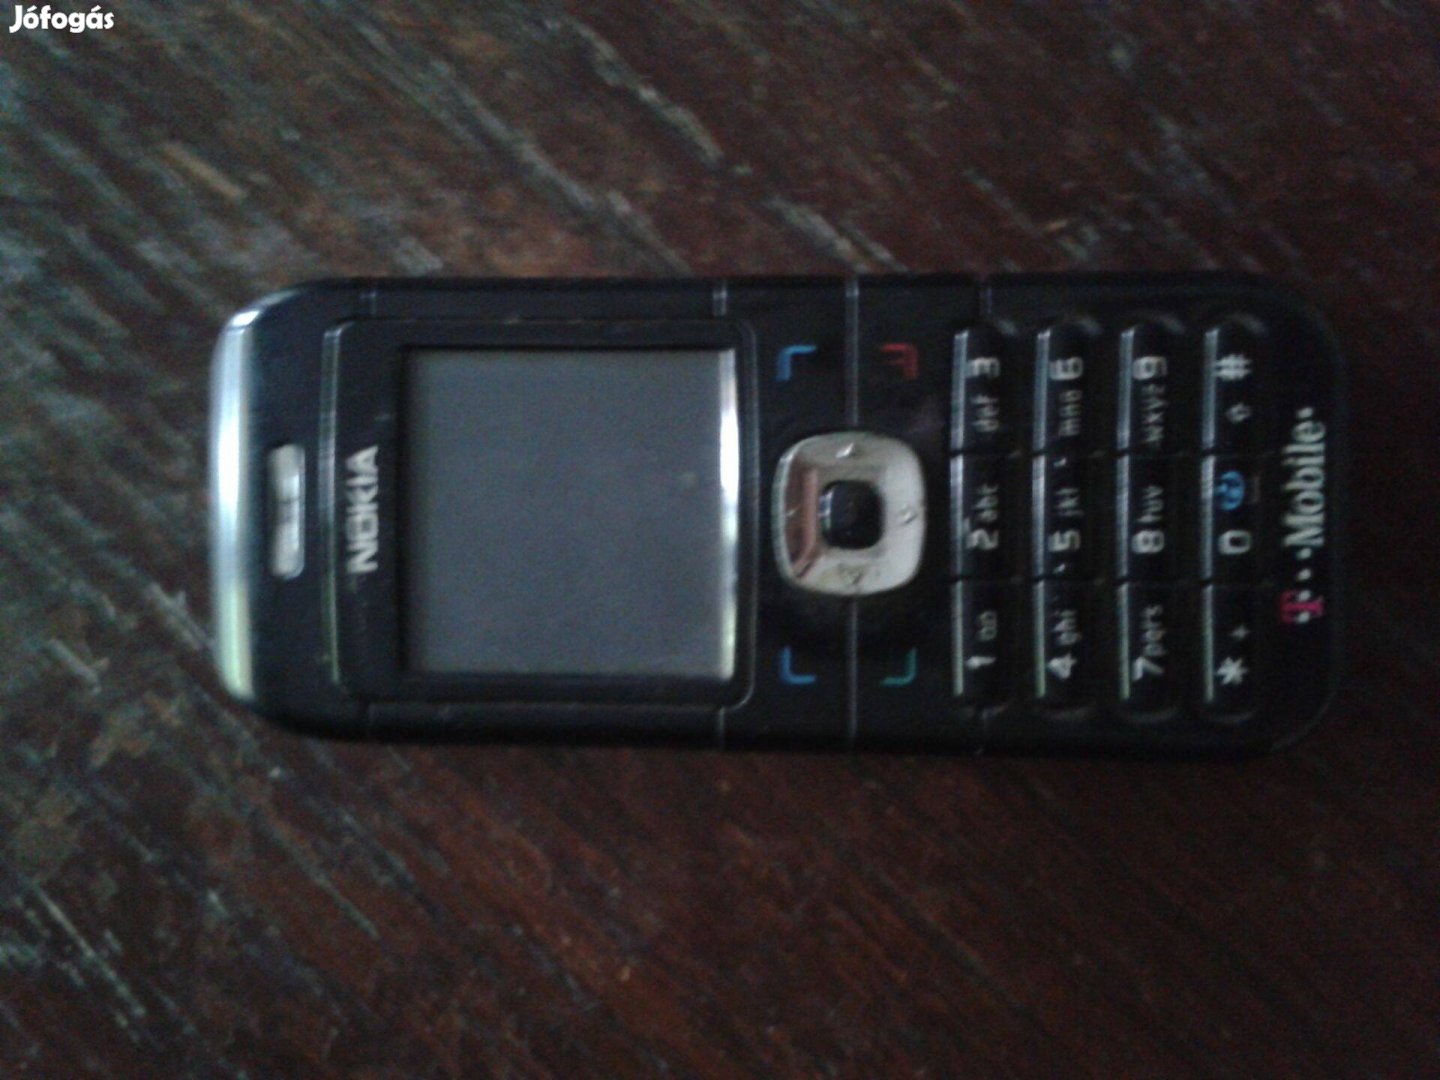 Nokia 6030 Mobil telefon